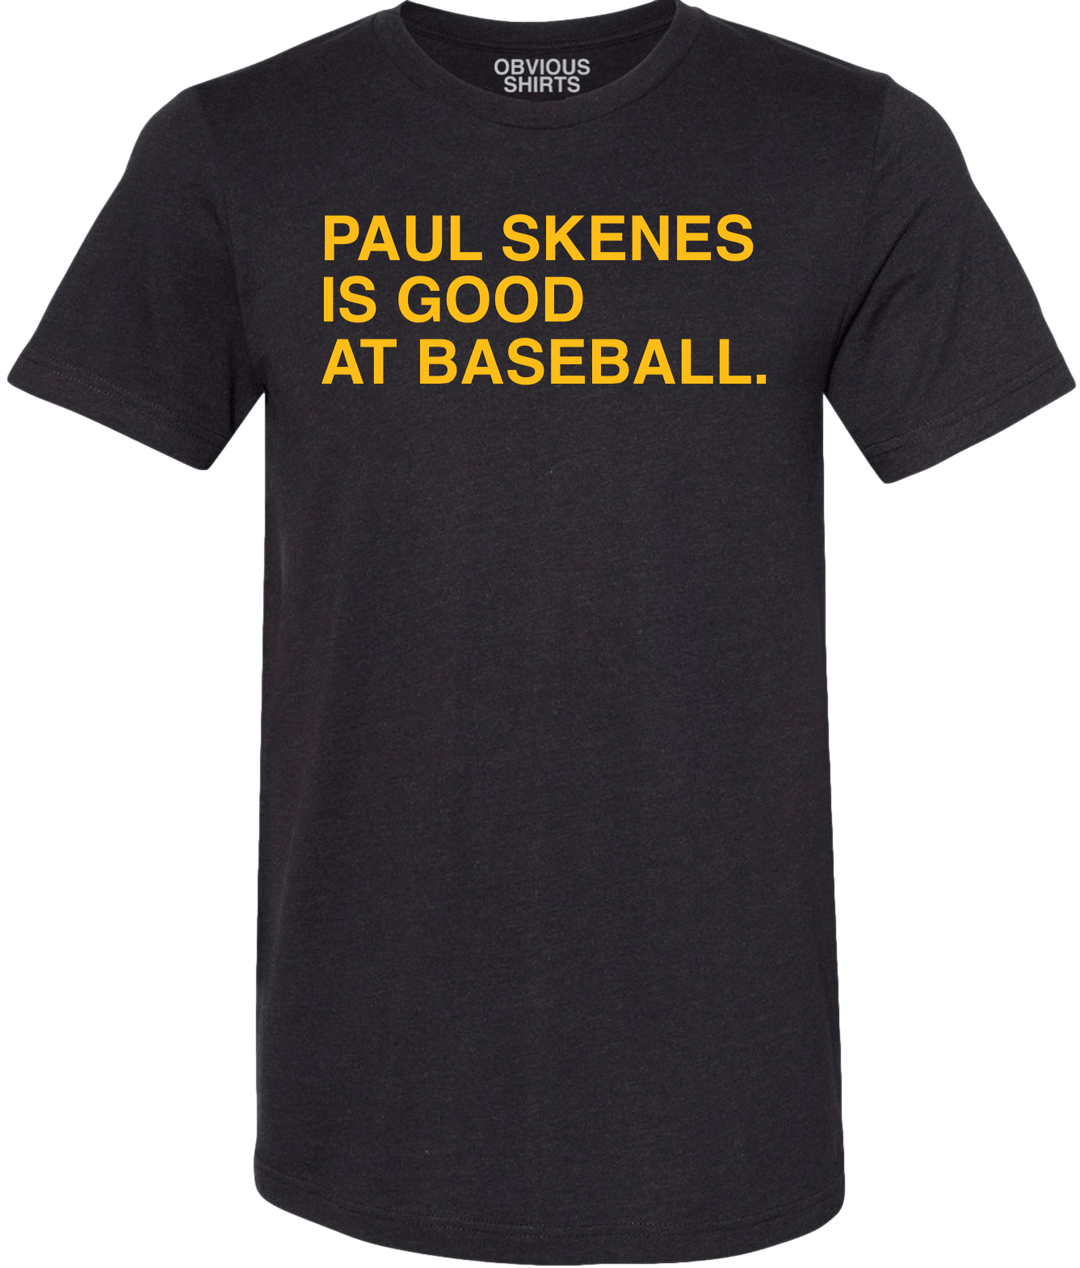 PAUL SKENES IS GOOD AT BASEBALL. - OBVIOUS SHIRTS